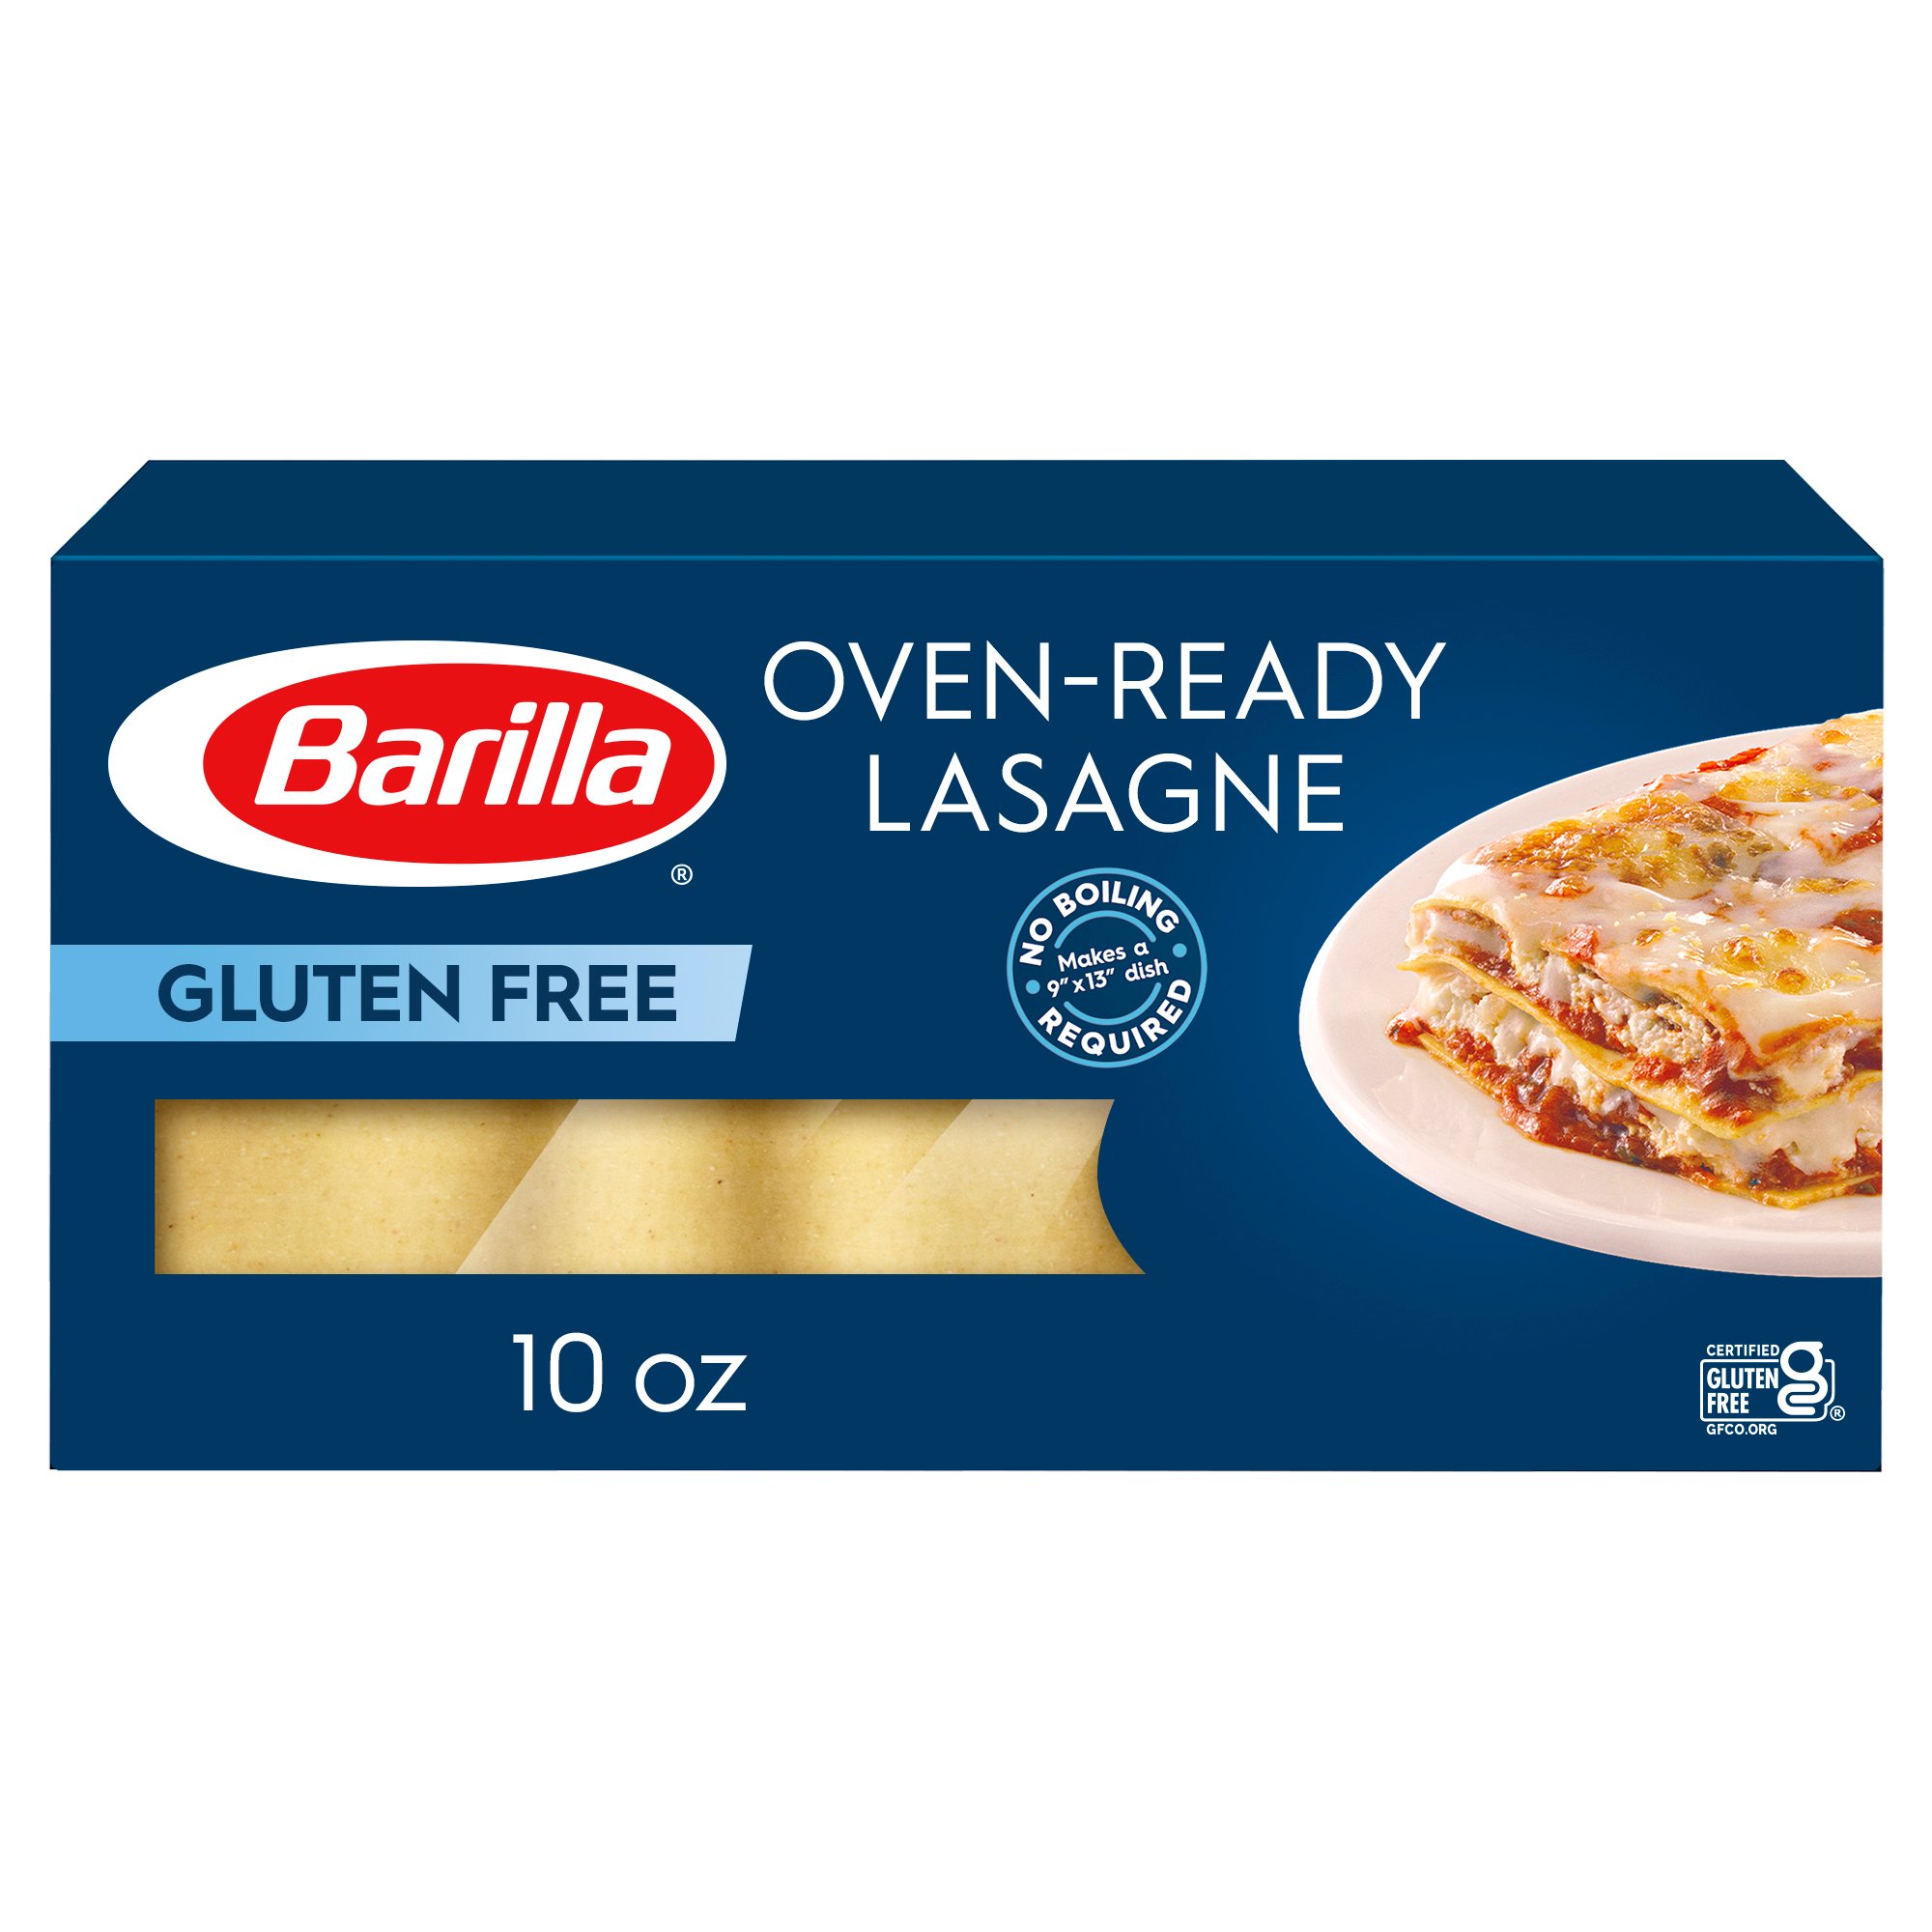 Barilla Gluten Free Oven Ready Lasagne Shop Pasta At H E B